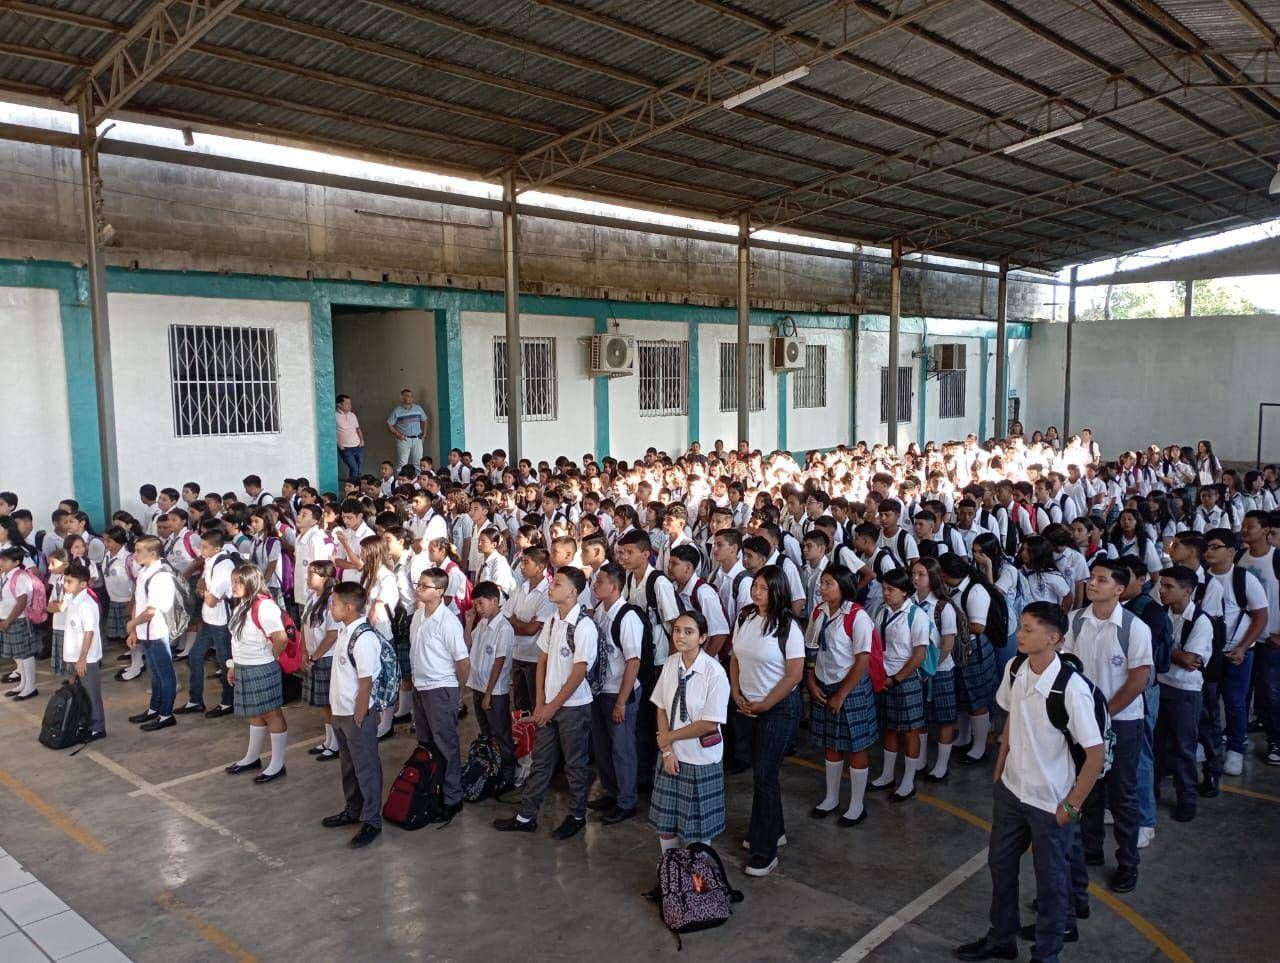 $!Estudiantes se forman durante el ingreso a sus clases en el Instituto Manuel de Jesús Subirana.